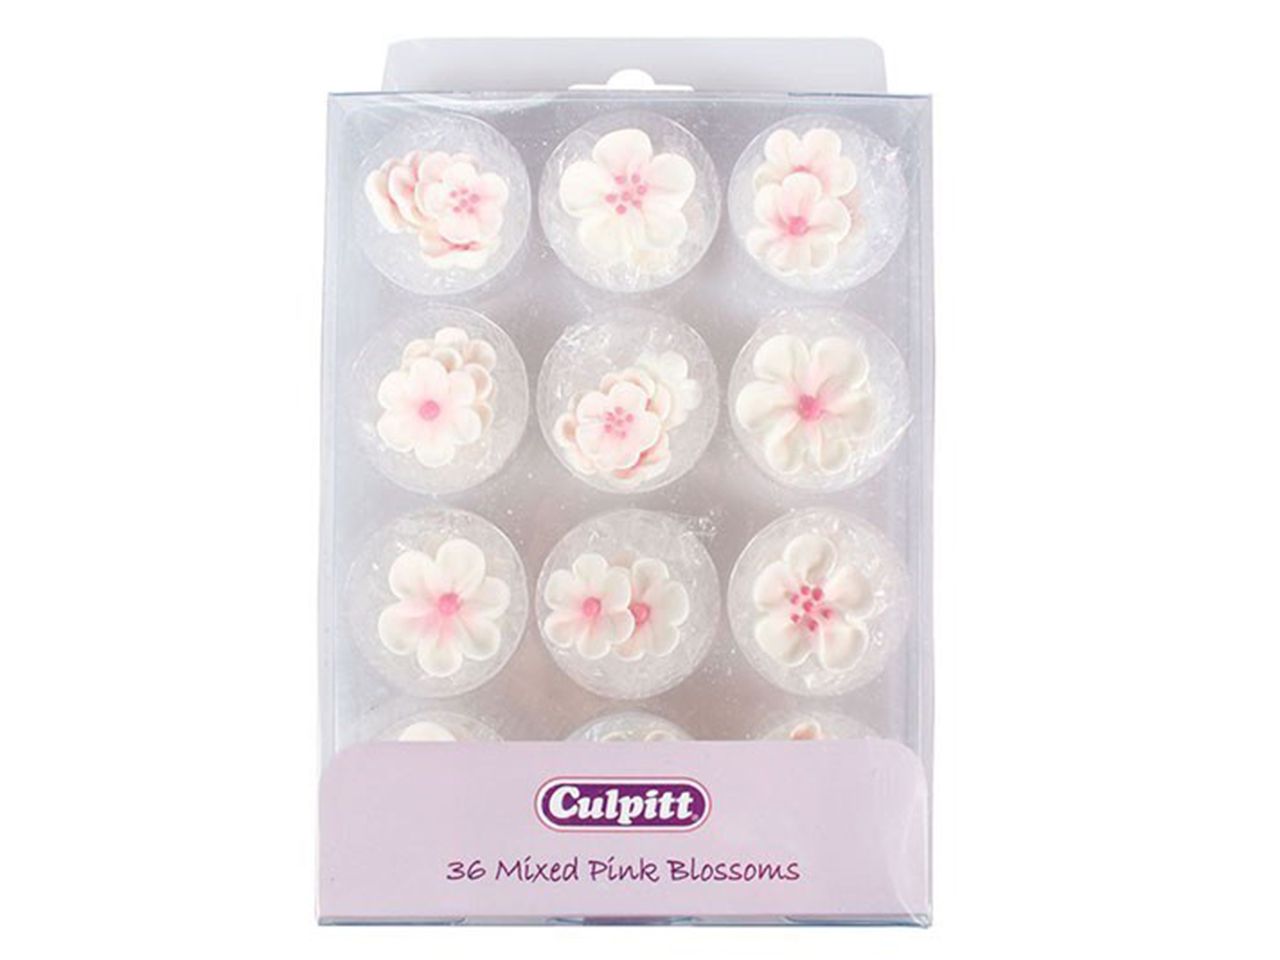 Culpitt: Zuckerblumen Pinke Blüten, 4 Designs, Weiß & Rosa, 36 Stück